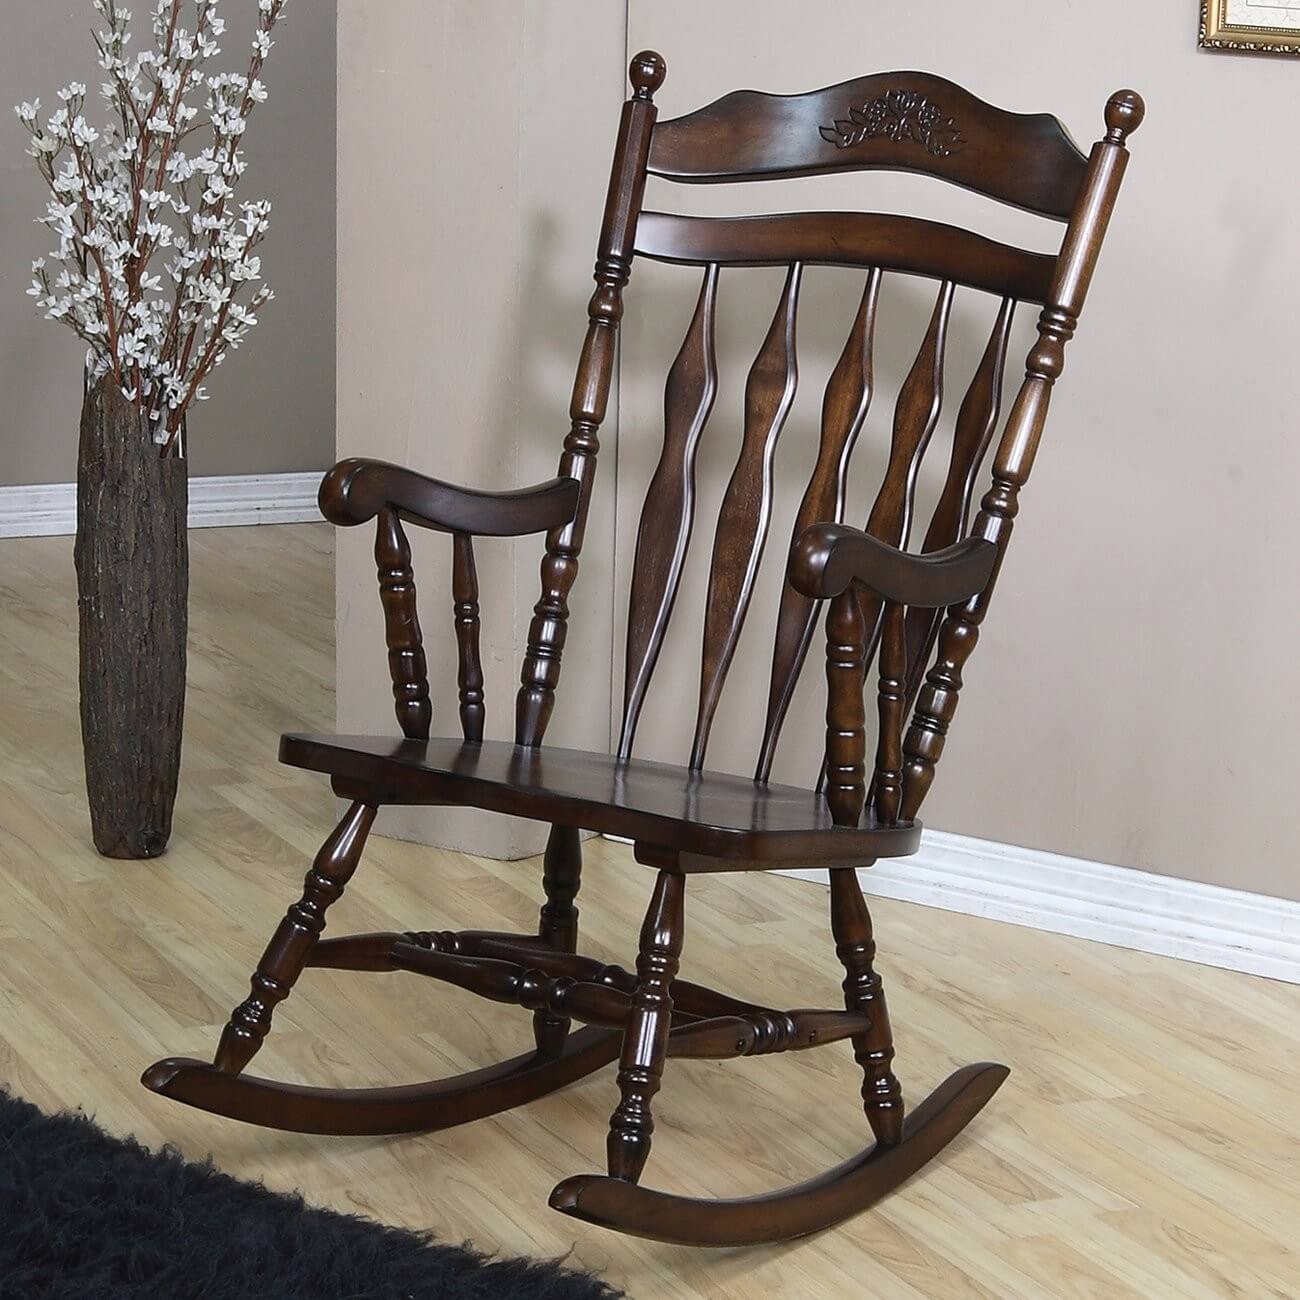 传统摇椅的特点是实木框架，扶手和雕刻的细节。我们的例子在主要的背面有一个细丝雕刻。